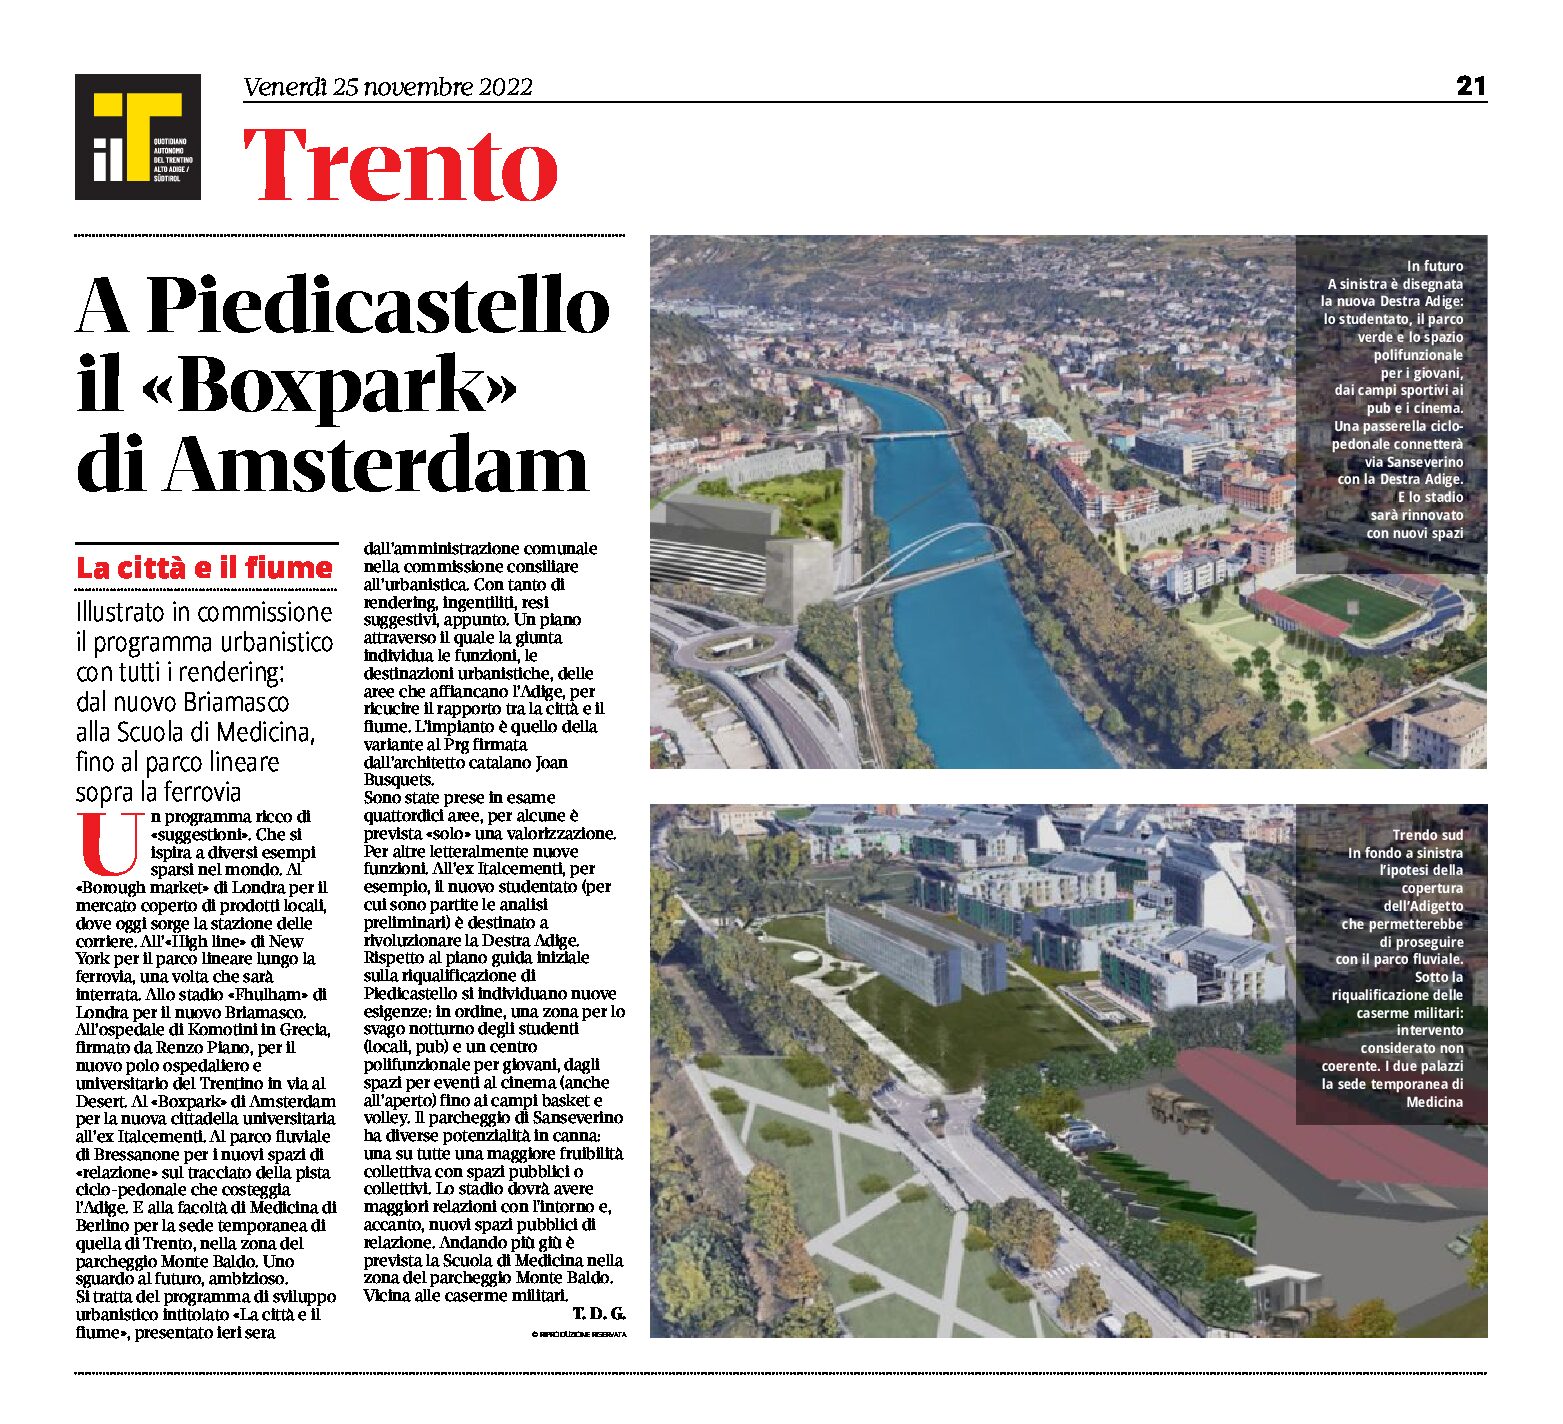 Trento: illustrato il programma urbanistico “la città e il fiume”